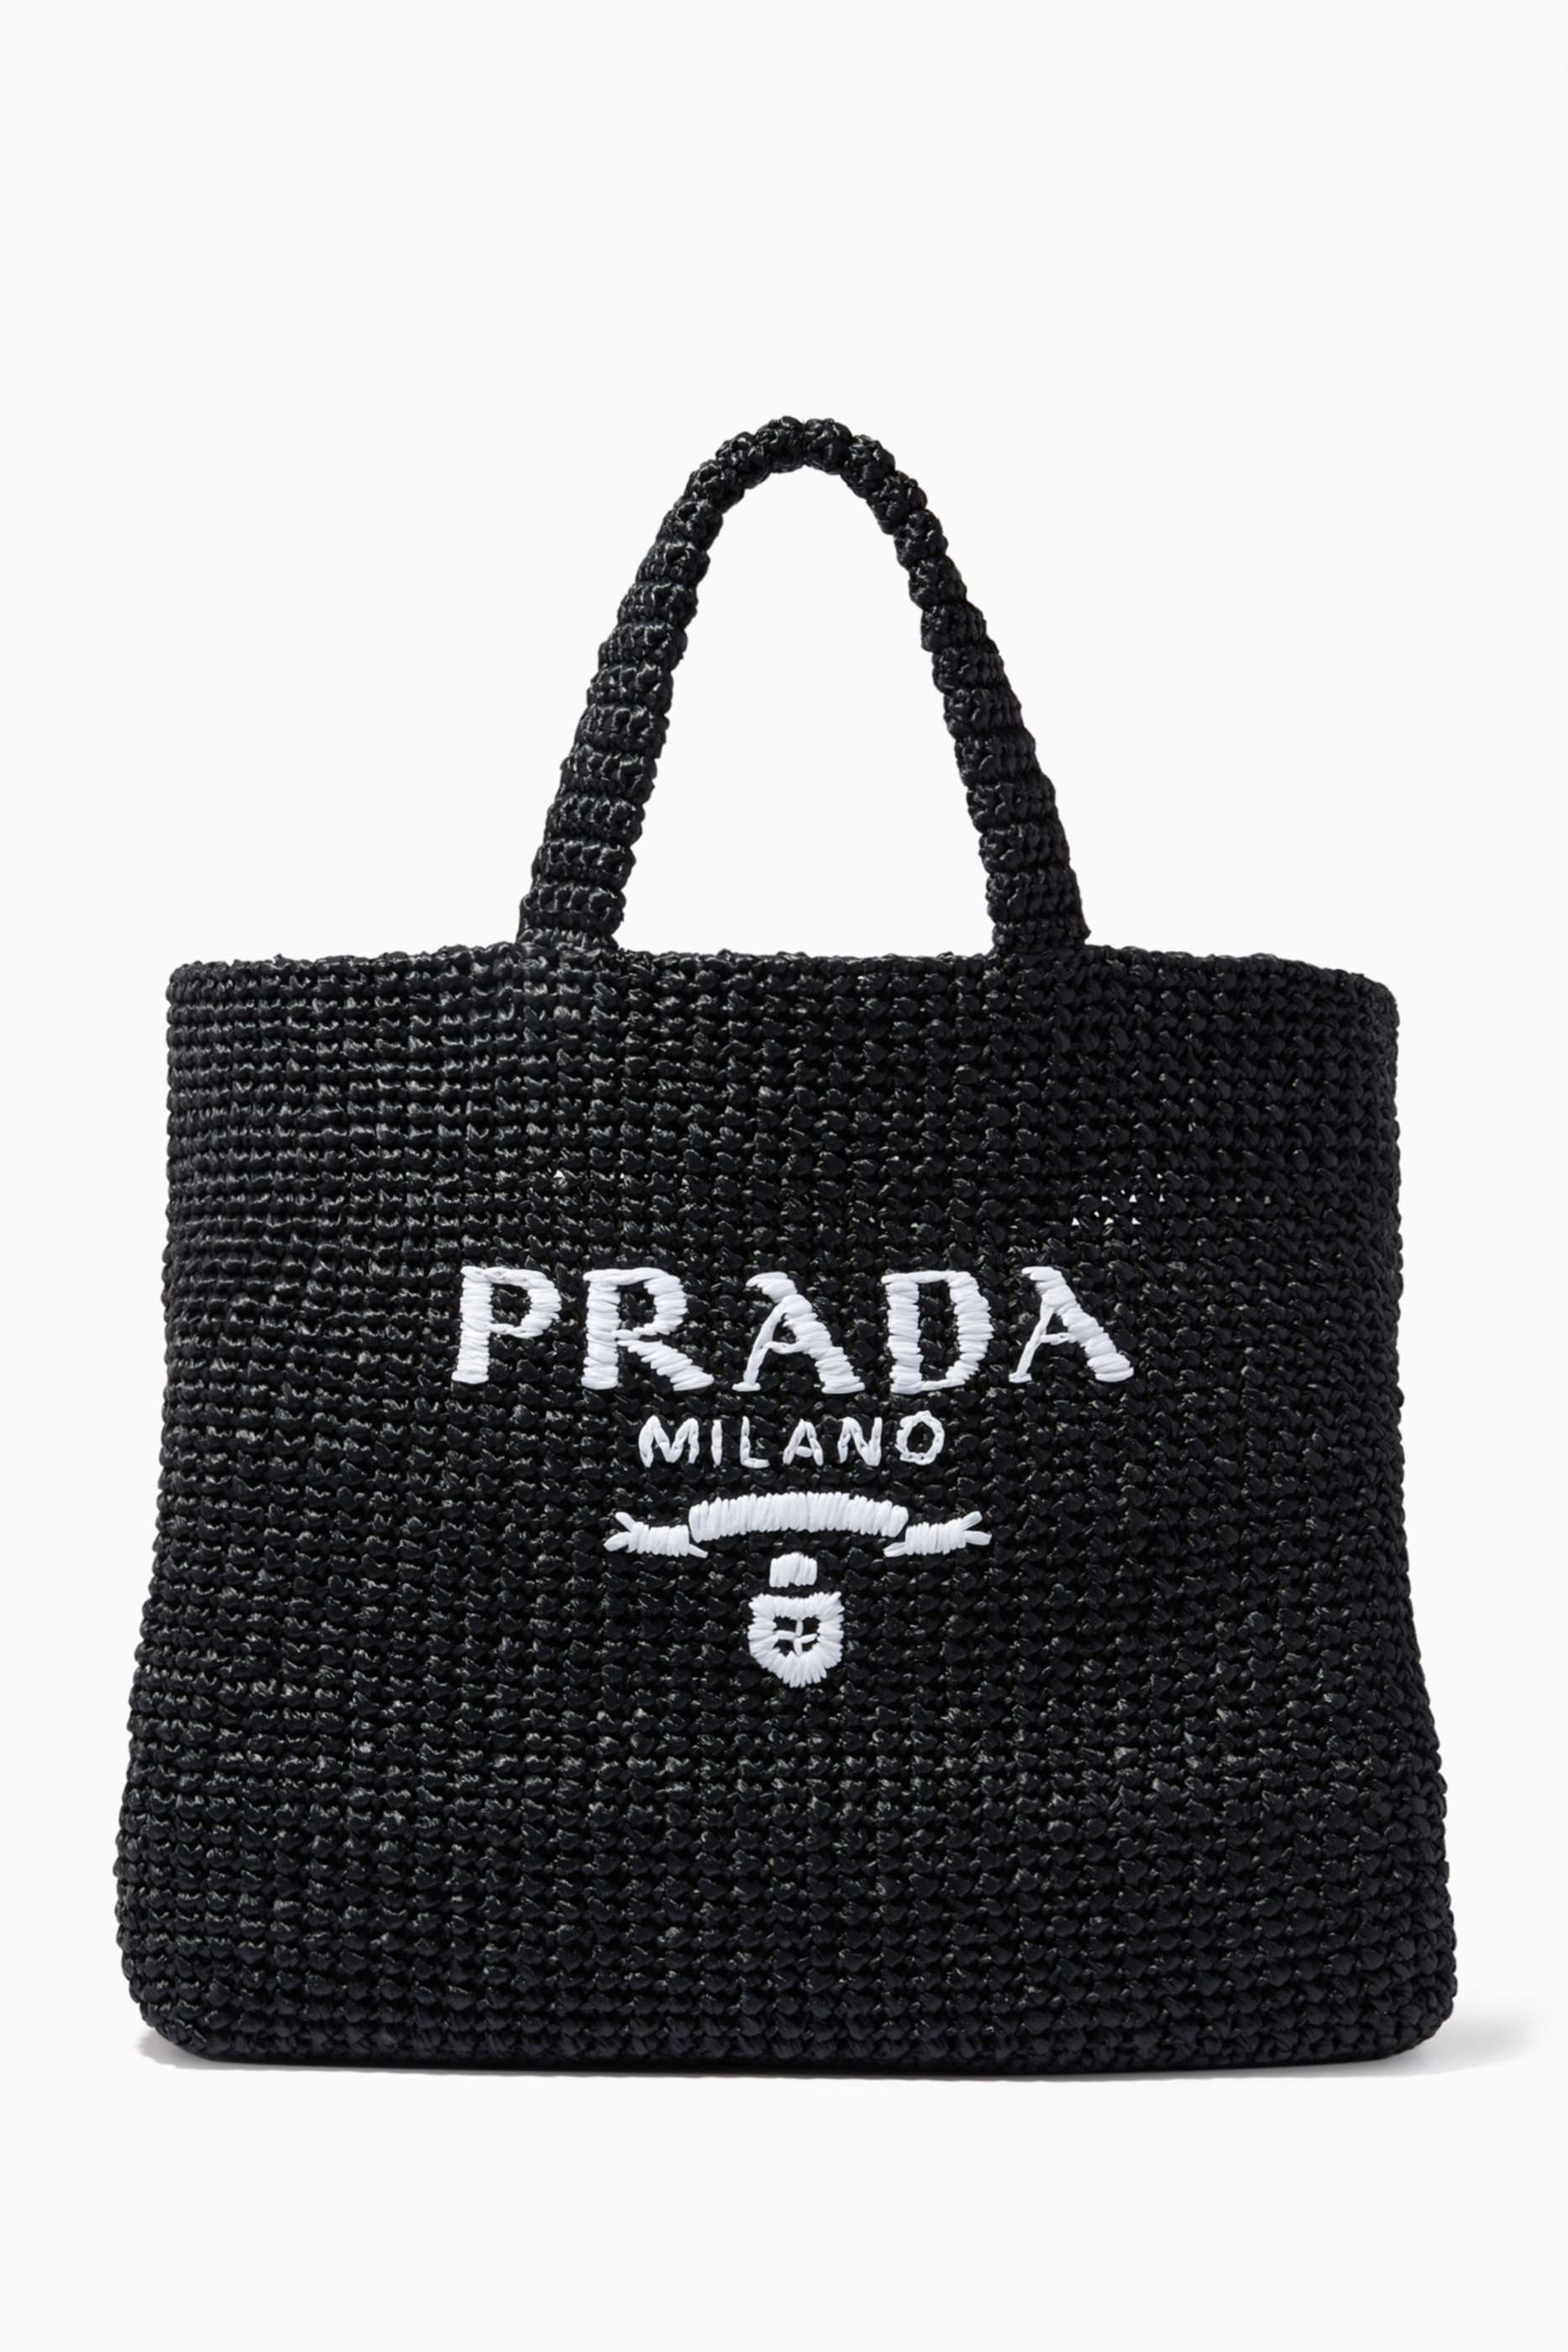 shop-prada-raffia-tote-bag-for-women